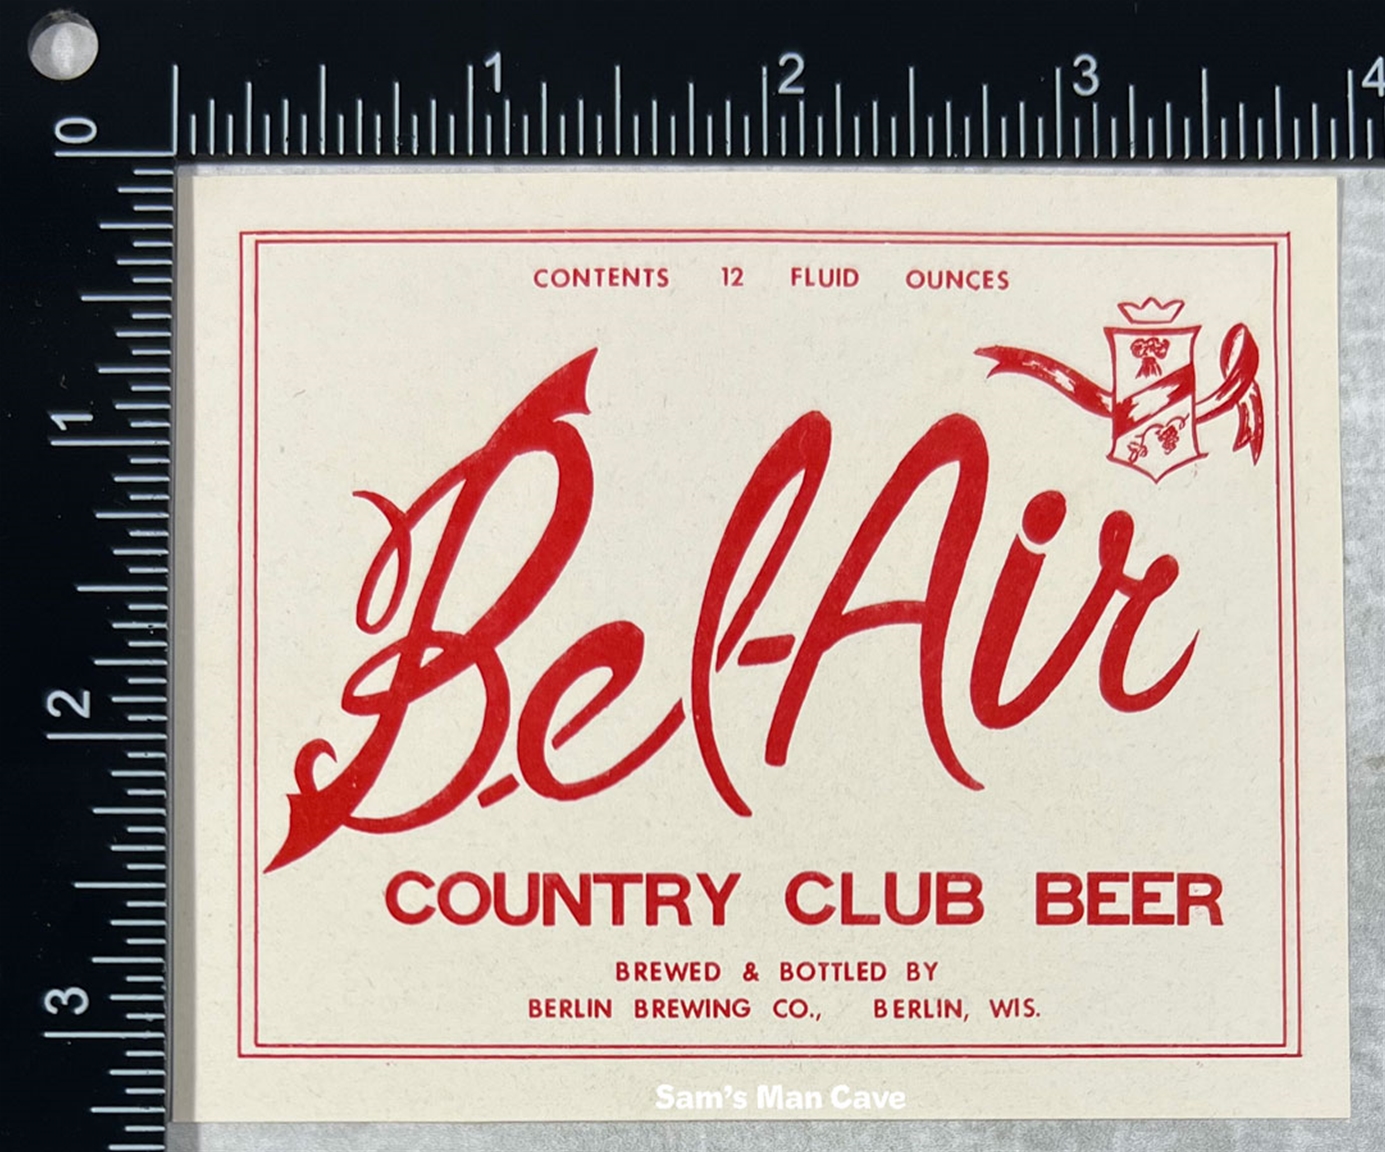 Bel-Air Country Club Beer Label